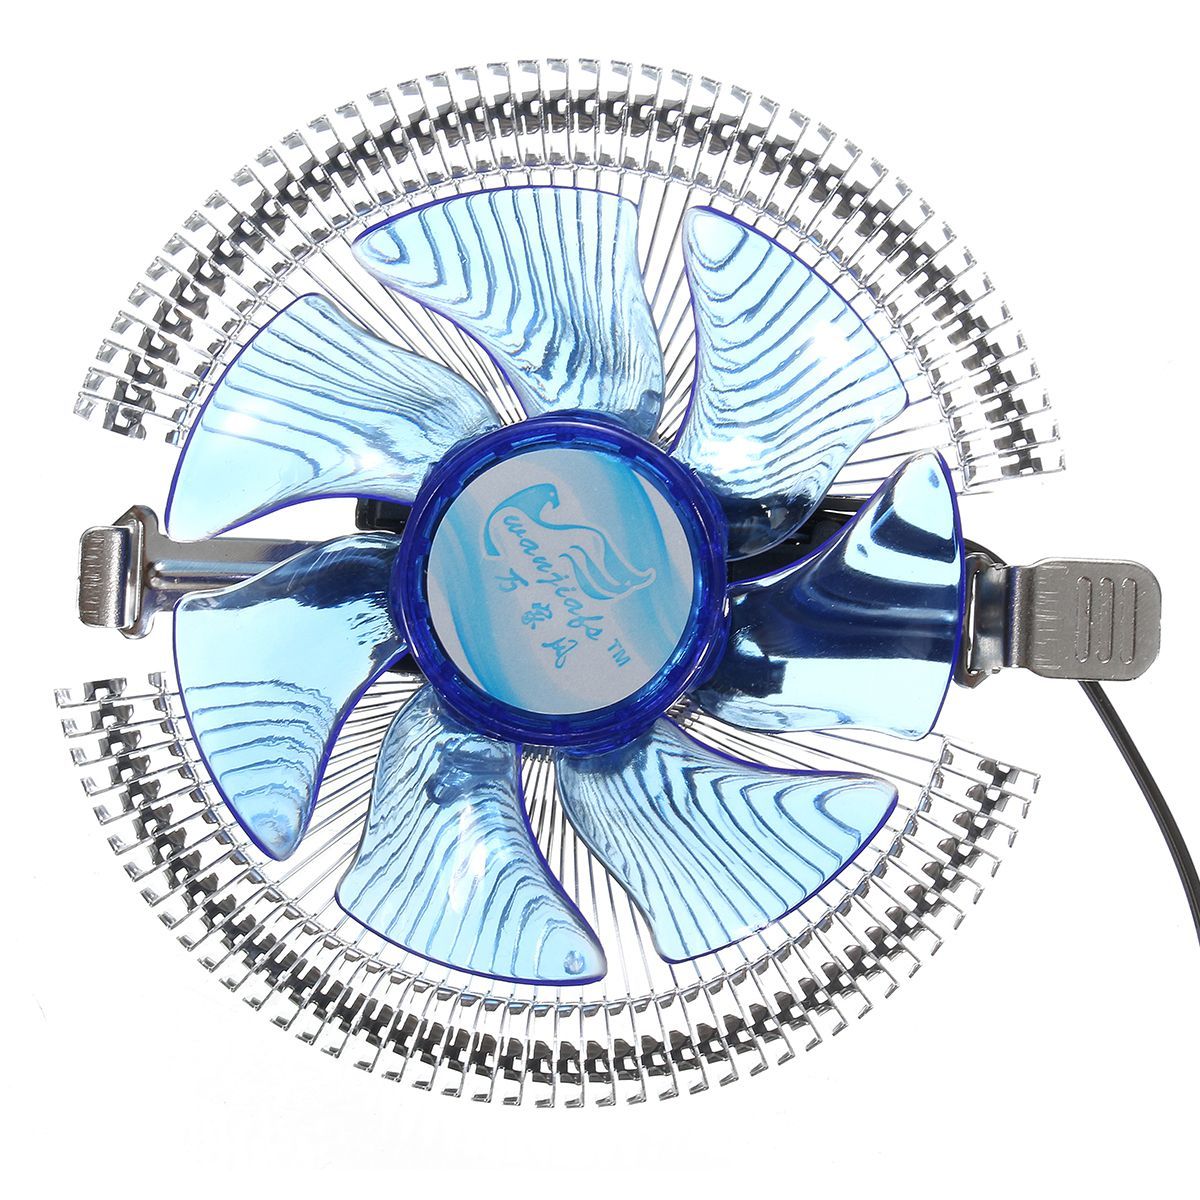 Quiet-Blue-LED-CPU-Cooler-Cooling-Fan-Heat-Sink-for-Intel-LGA775-11551156-i3i5i7-AM2-AM3-1077437